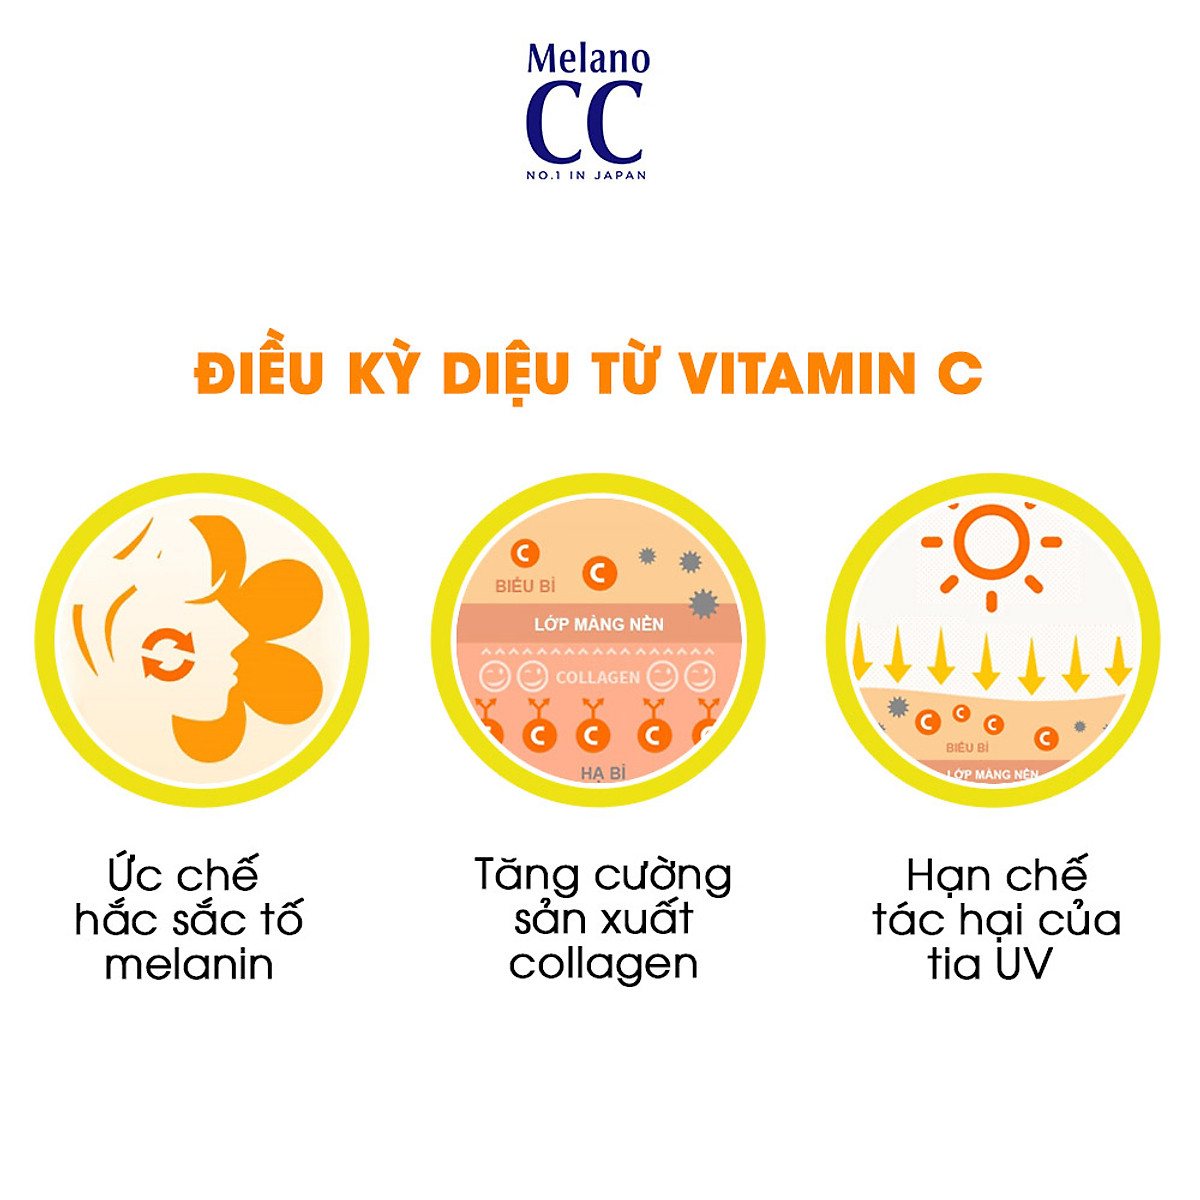 Serum Melano CC Vitamin C Brightening Essence chứa vitamin C tinh khiết trị thâm vượt trội